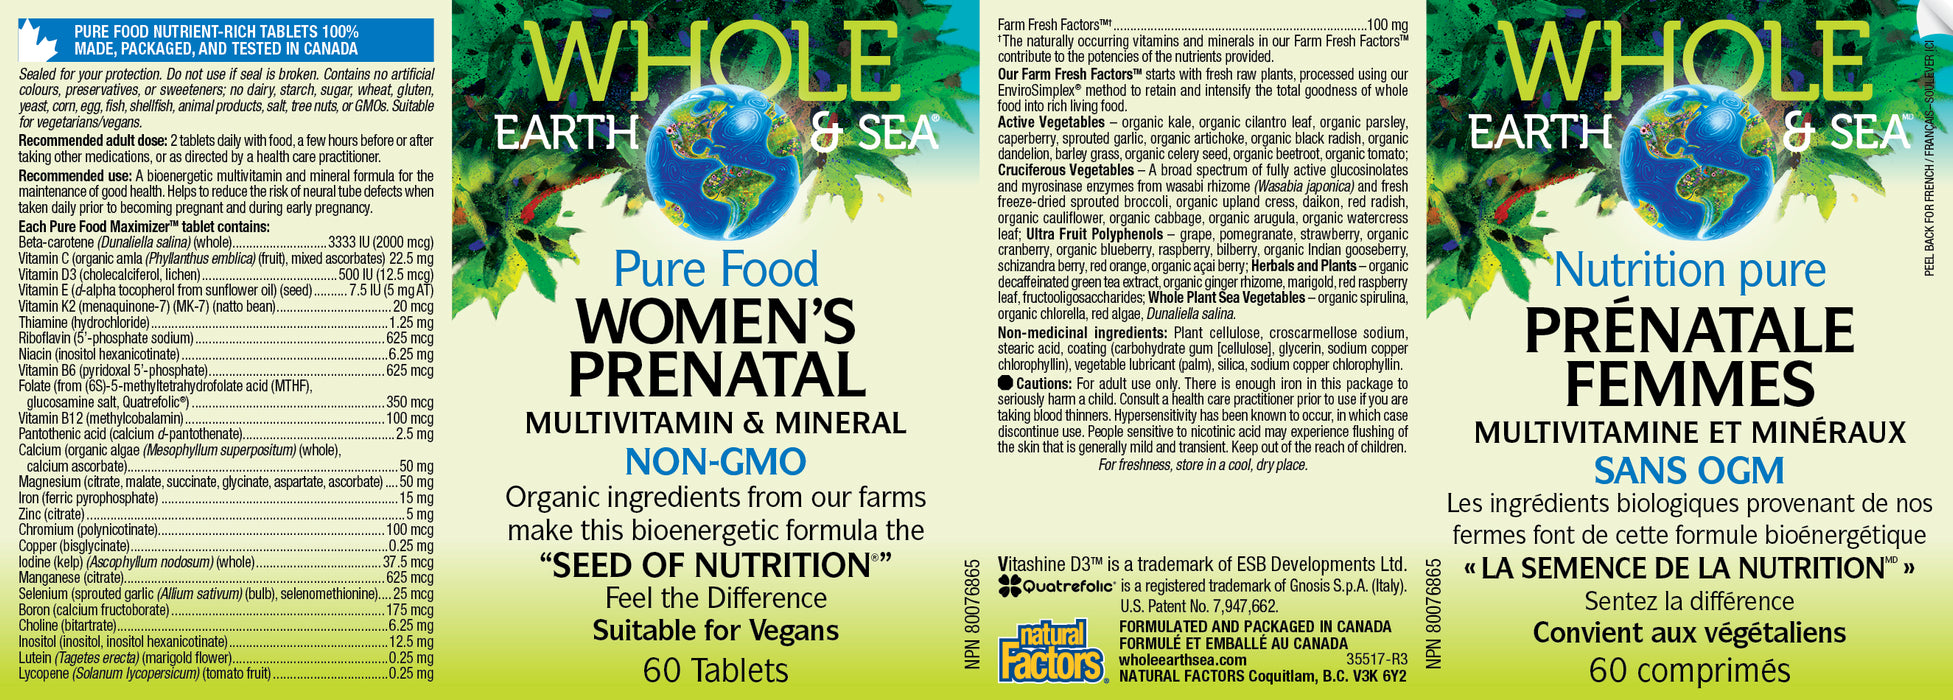 Whole Earth & Sea Women's Prenatal Multivitamin & Mineral 60 Tablets